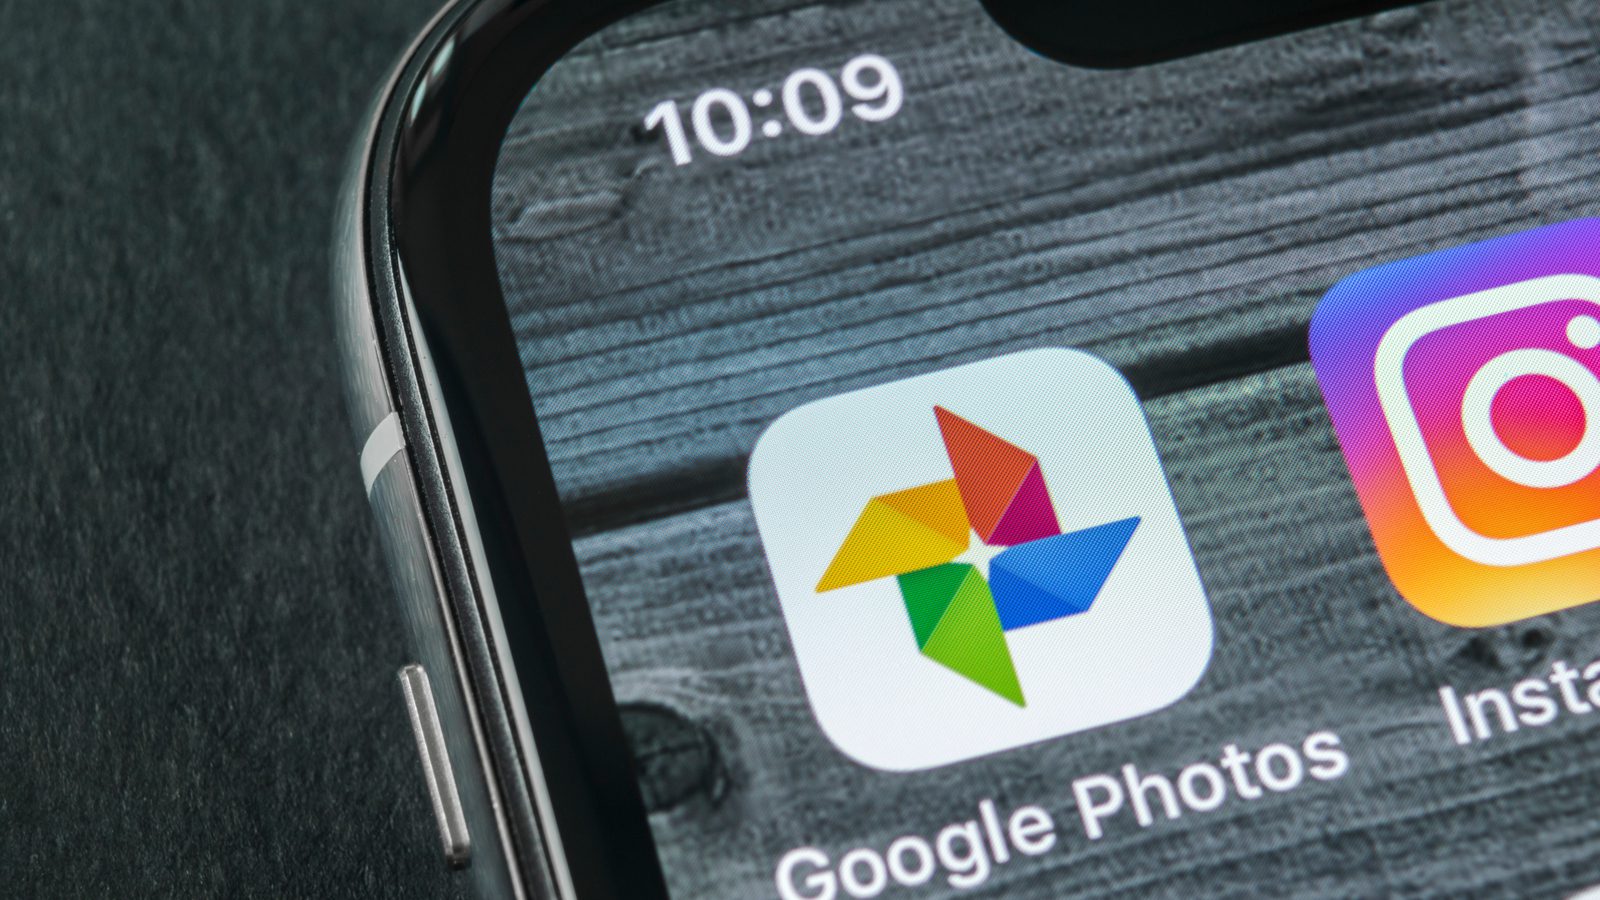 En bugg i Google Foto verkar slumpmässigt skada foton som lagras där